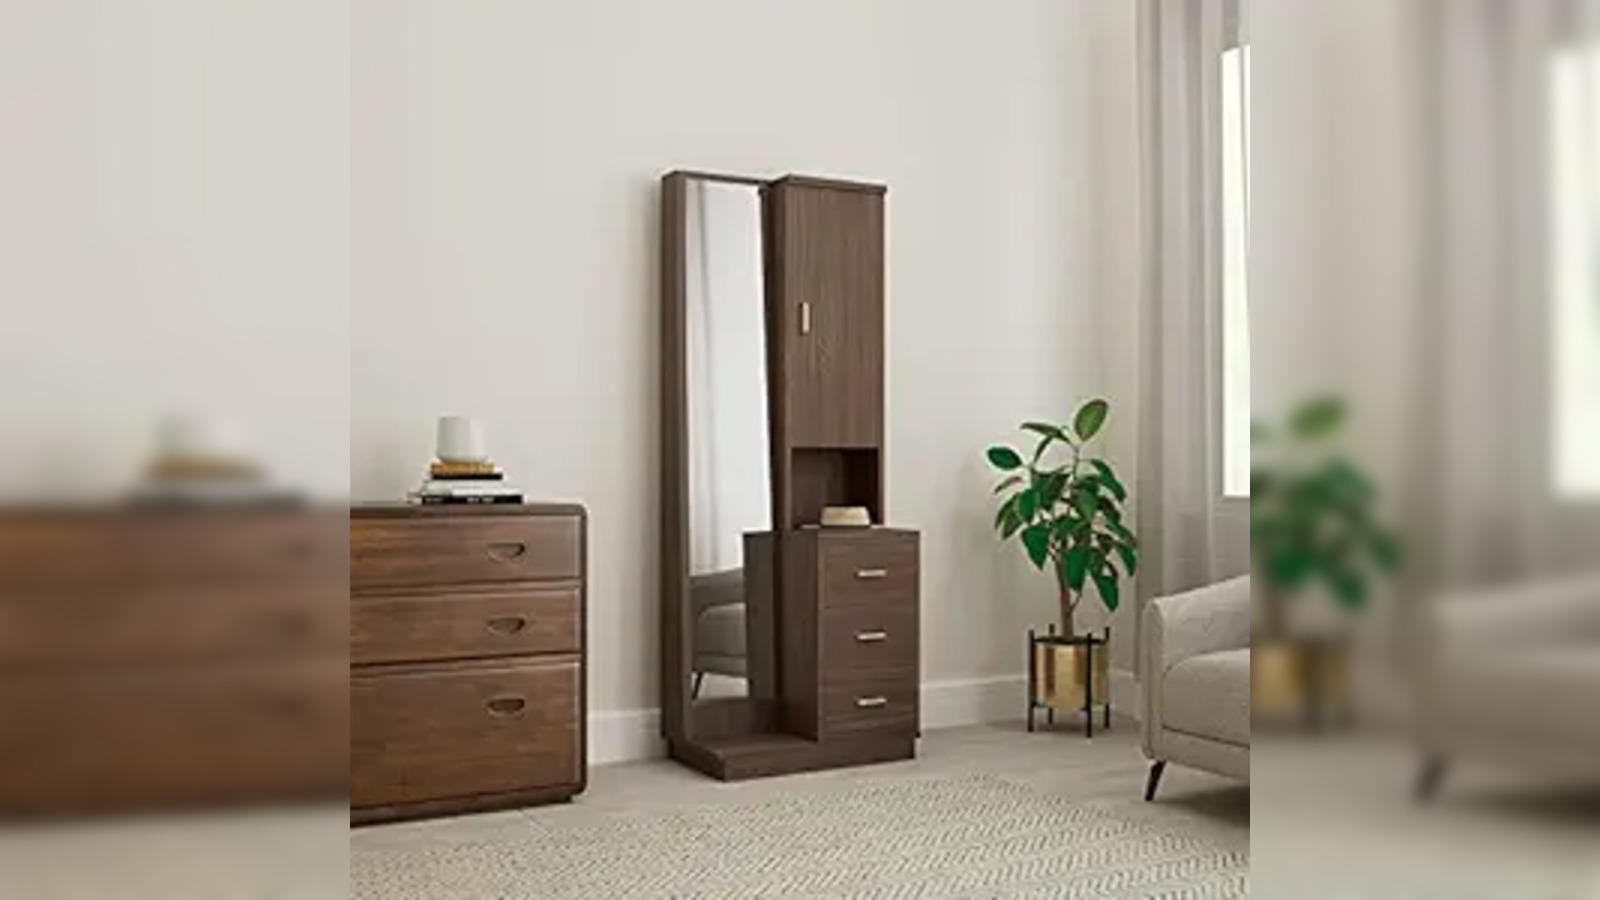 New design of Dressing table &... - Pransi STEEL Furniture | Facebook